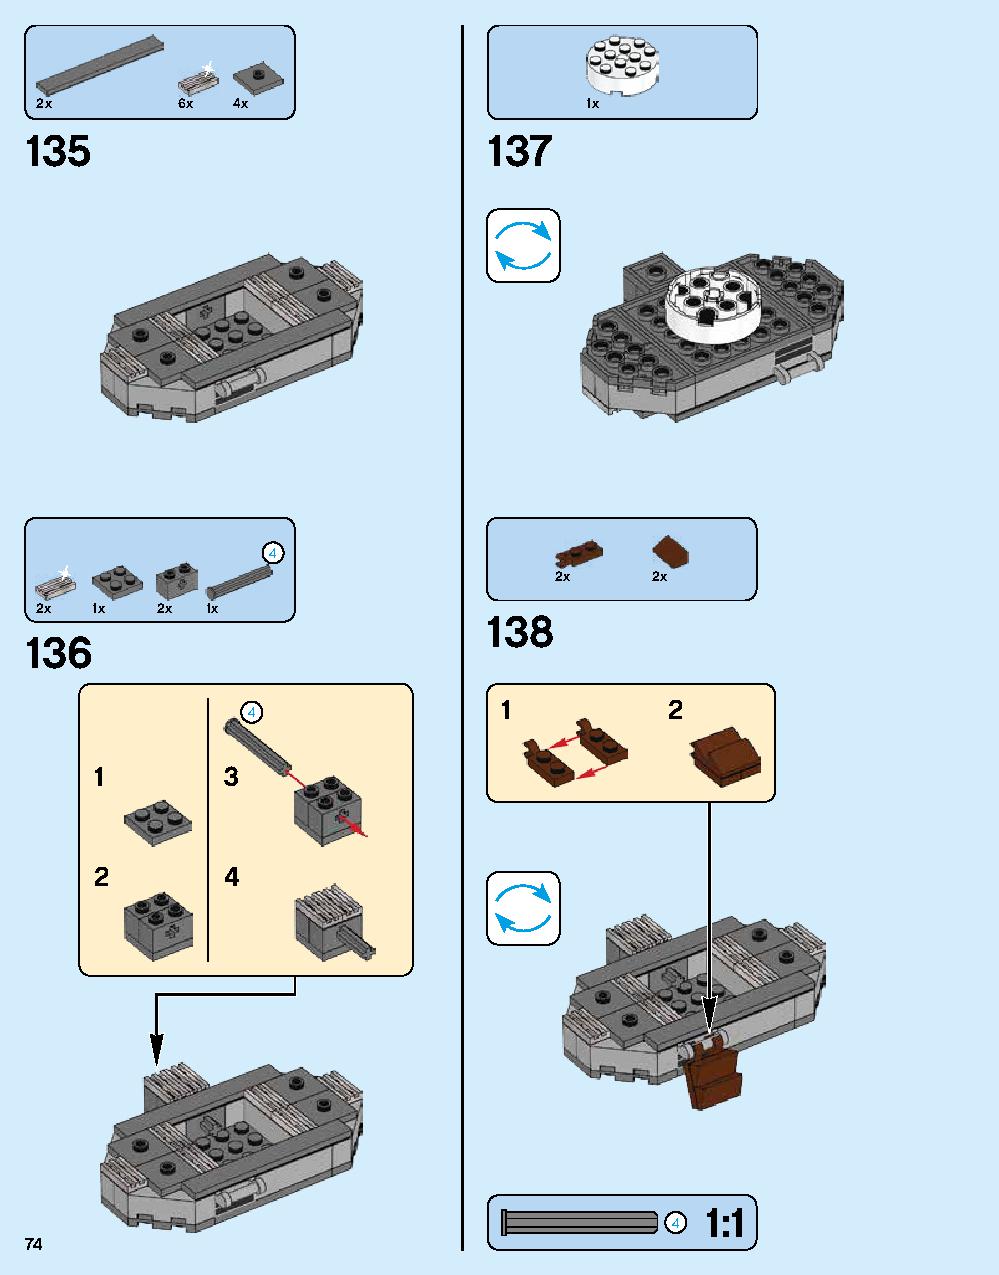 ニンジャゴー シティ 70620 レゴの商品情報 レゴの説明書・組立方法 74 page